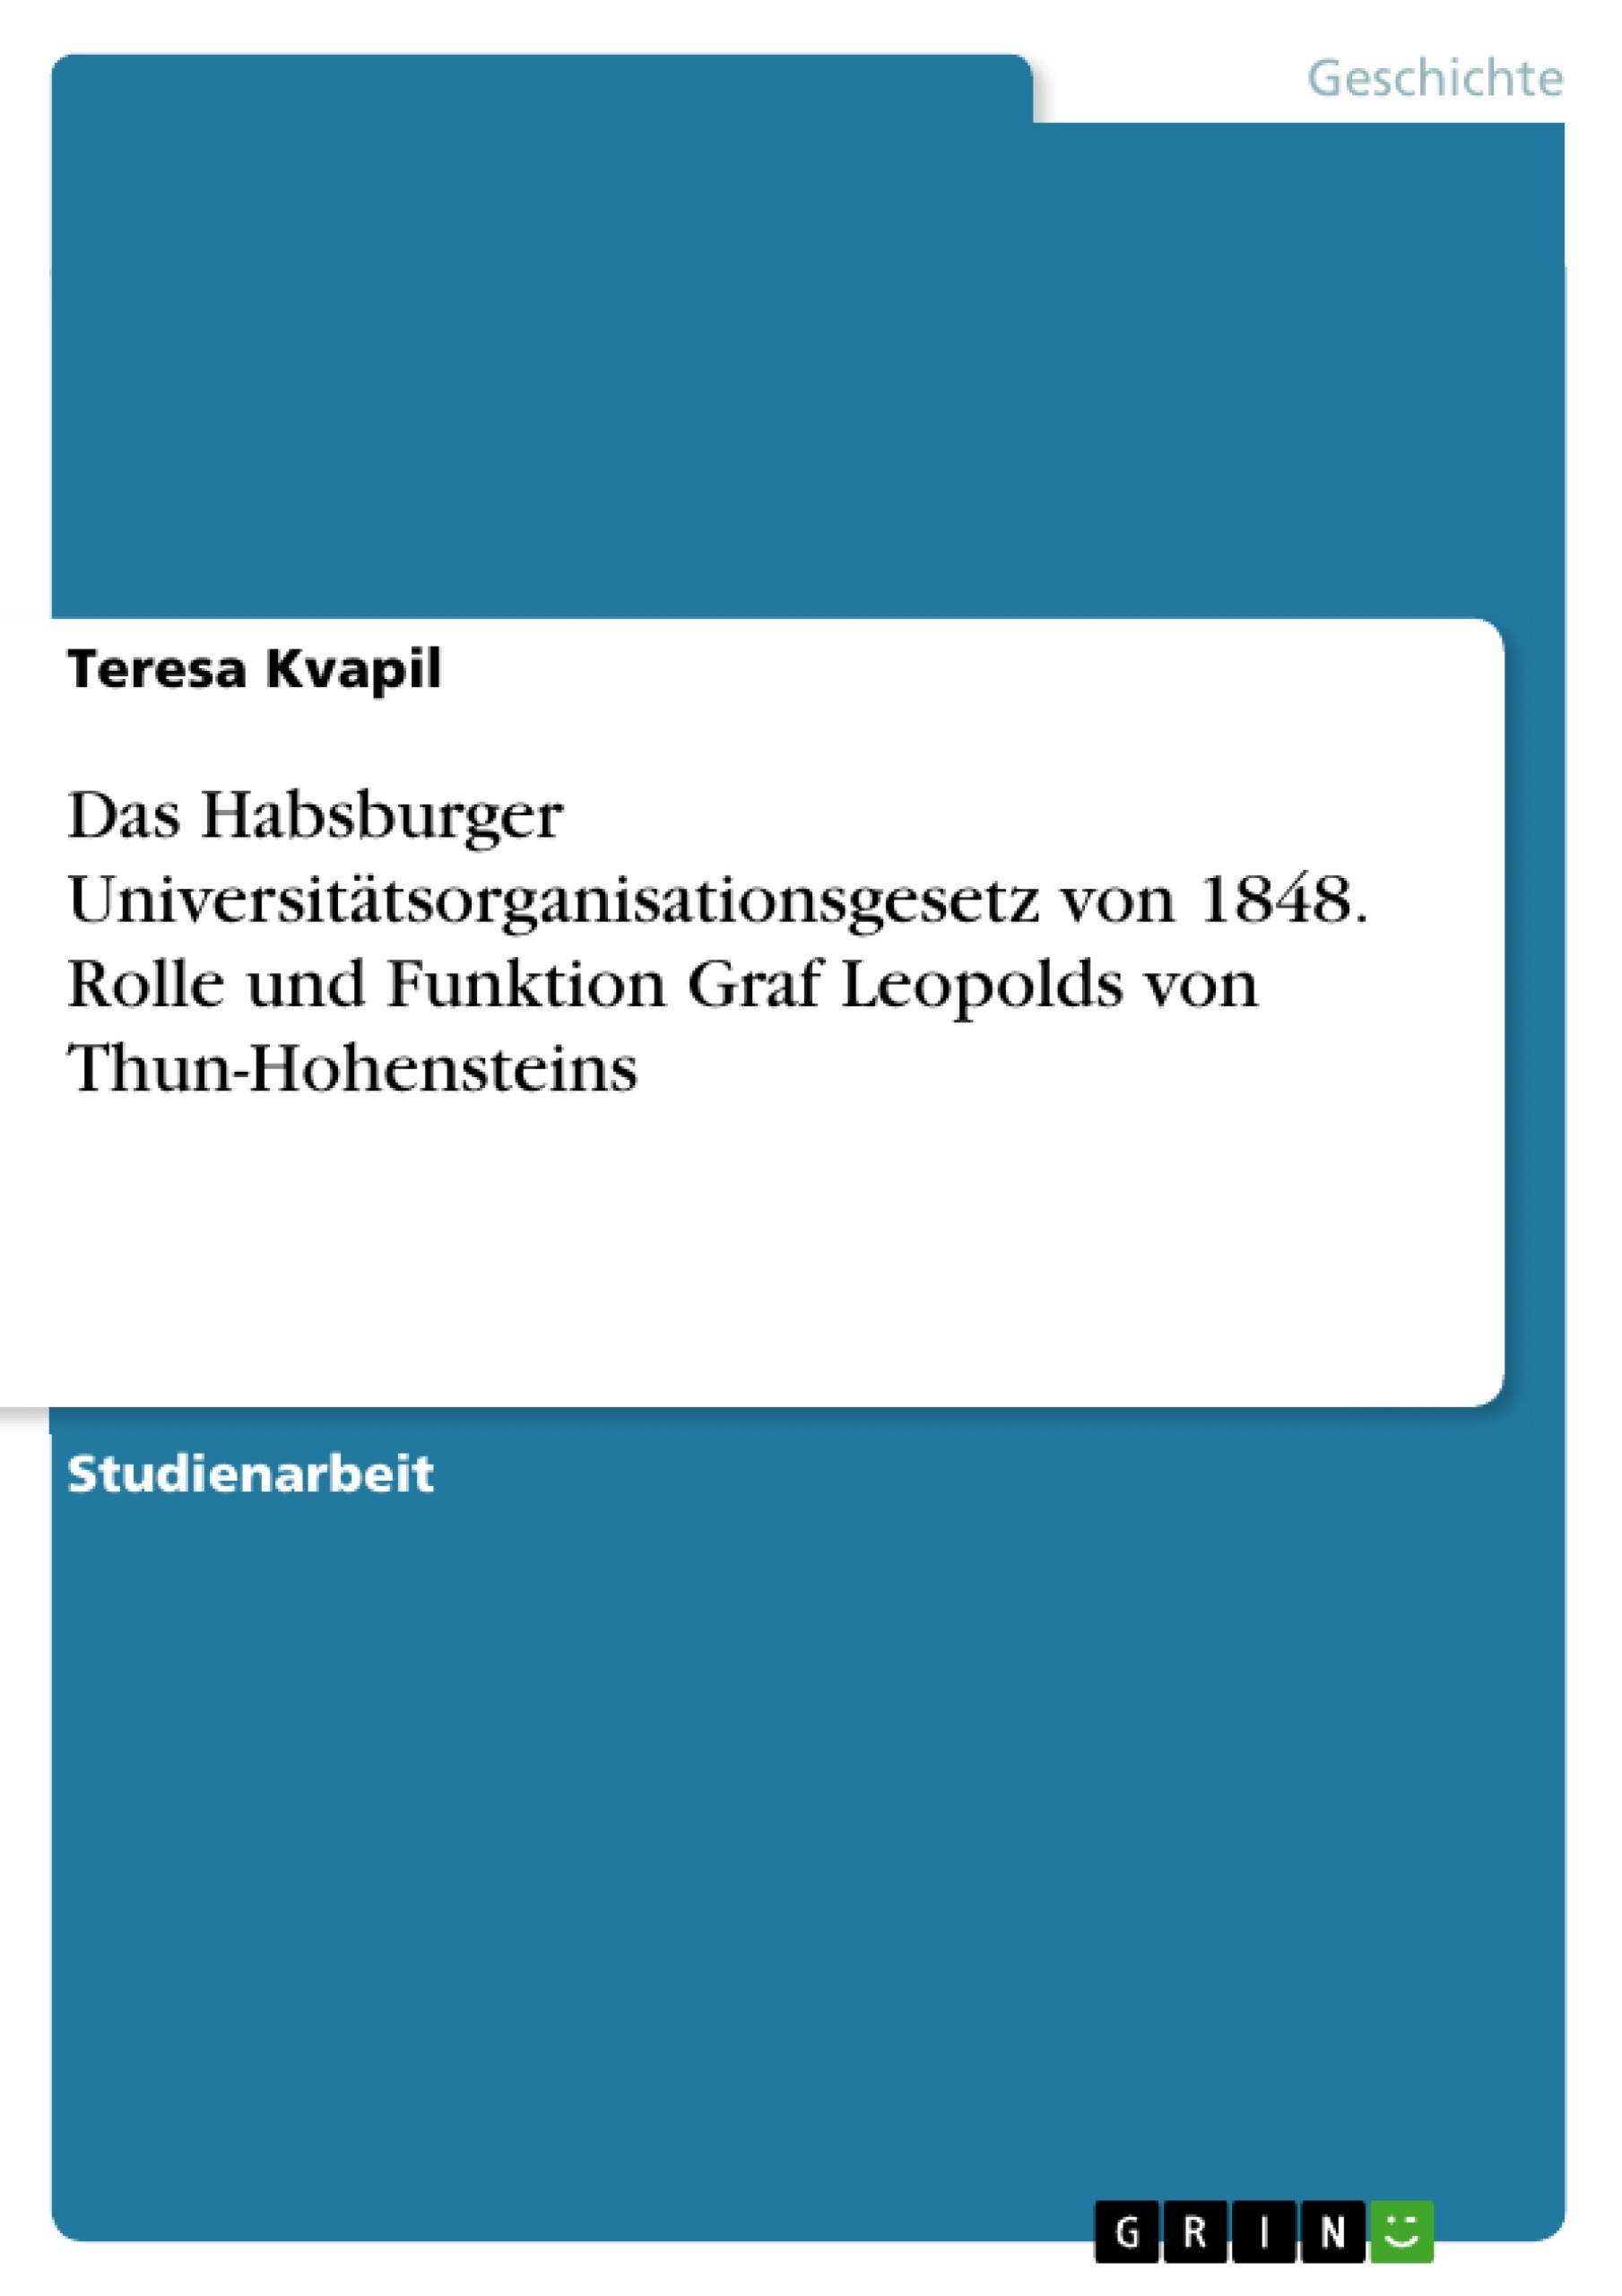 Título: Das Habsburger Universitätsorganisationsgesetz von 1848. Rolle und Funktion Graf Leopolds von Thun-Hohensteins